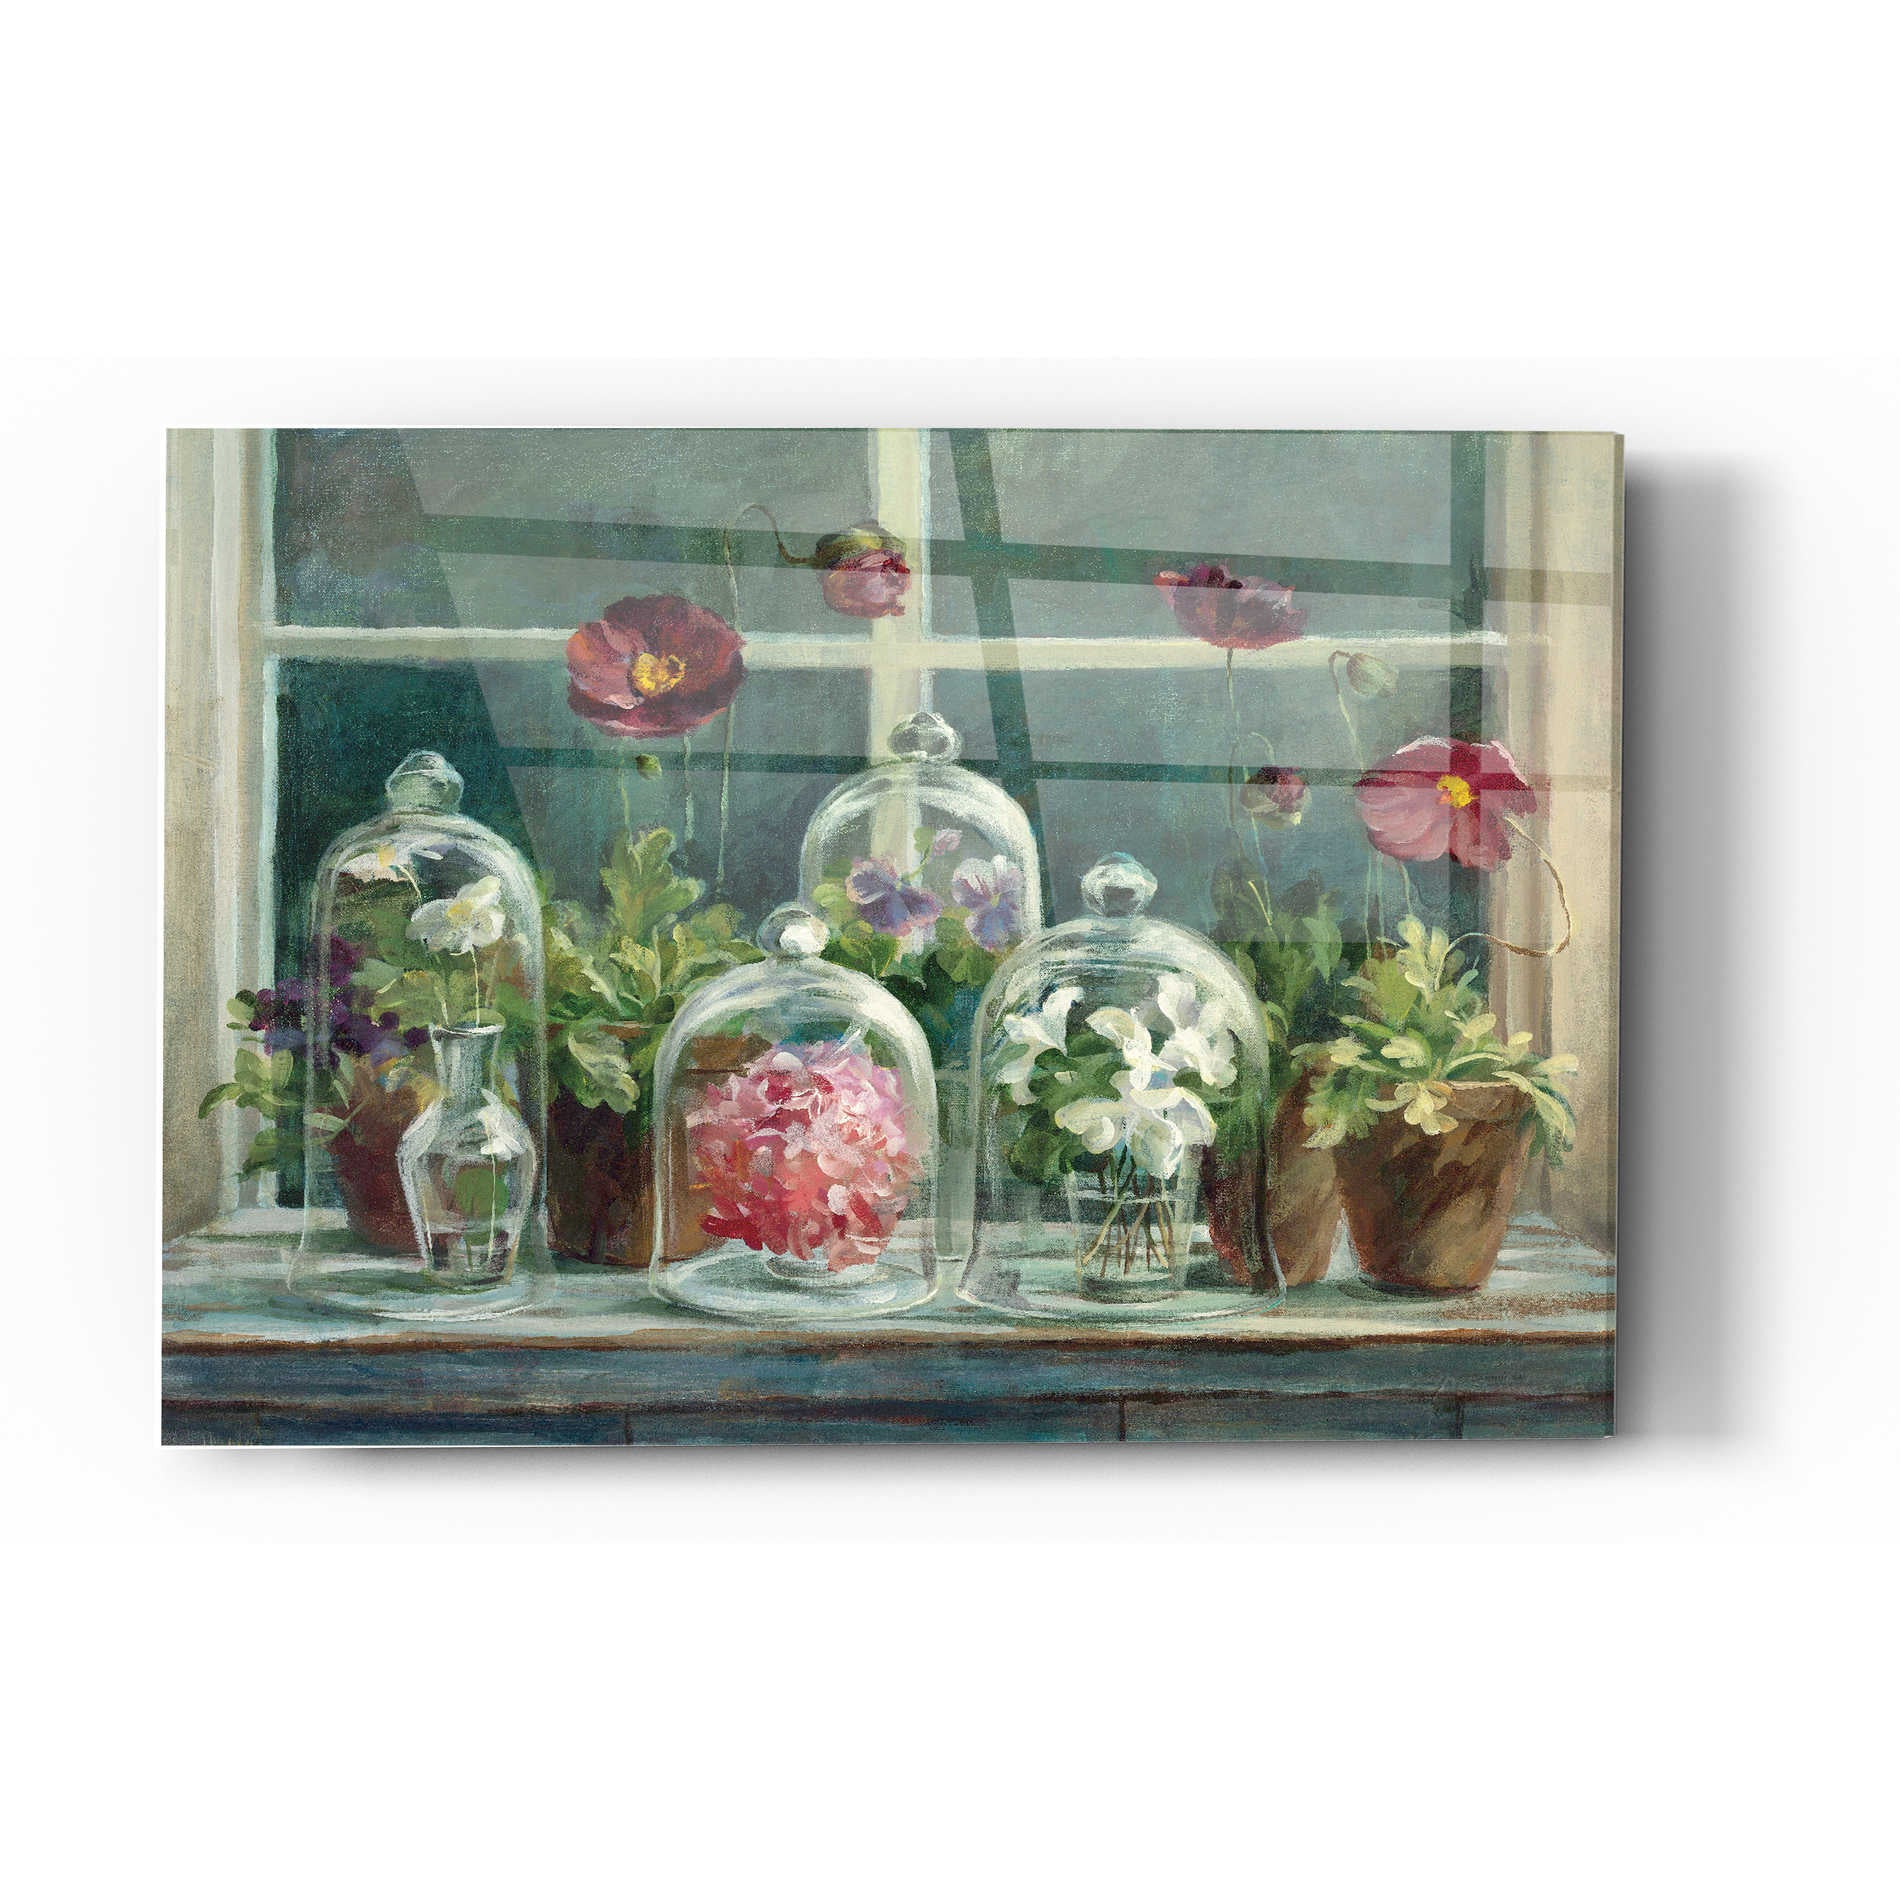 Epic Art 'Purple Poppies Windowsill Crop' by Danhui Nai, Acrylic Glass Wall Art,16x24